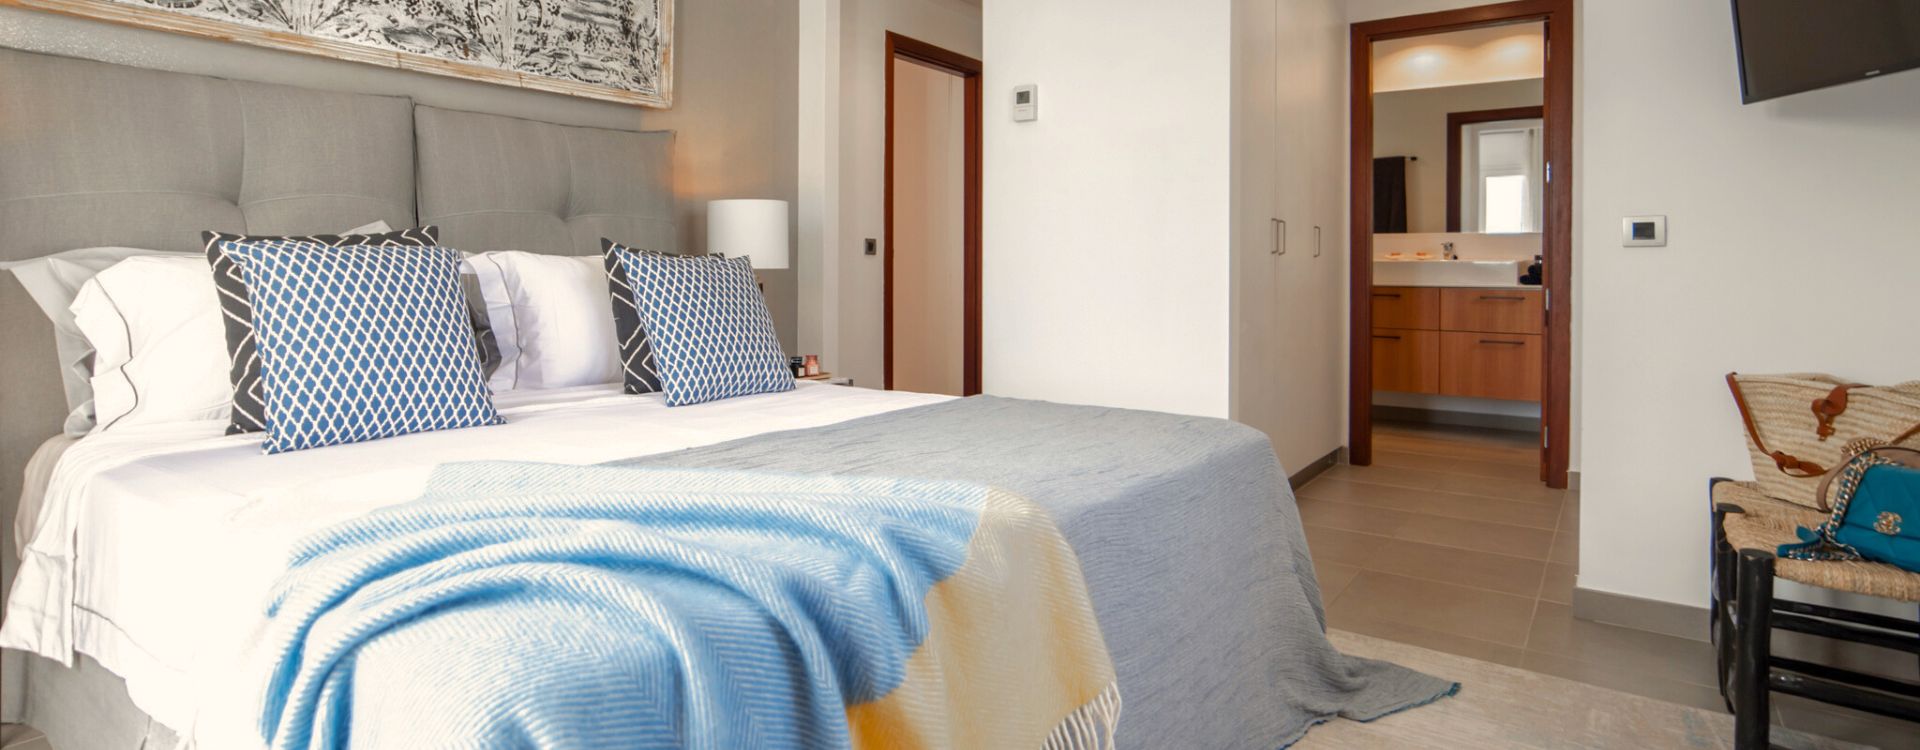 Luxe vakantiehuis Villa Natalie in Cap Martinet, Ibiza met 5 slaapkamers. 